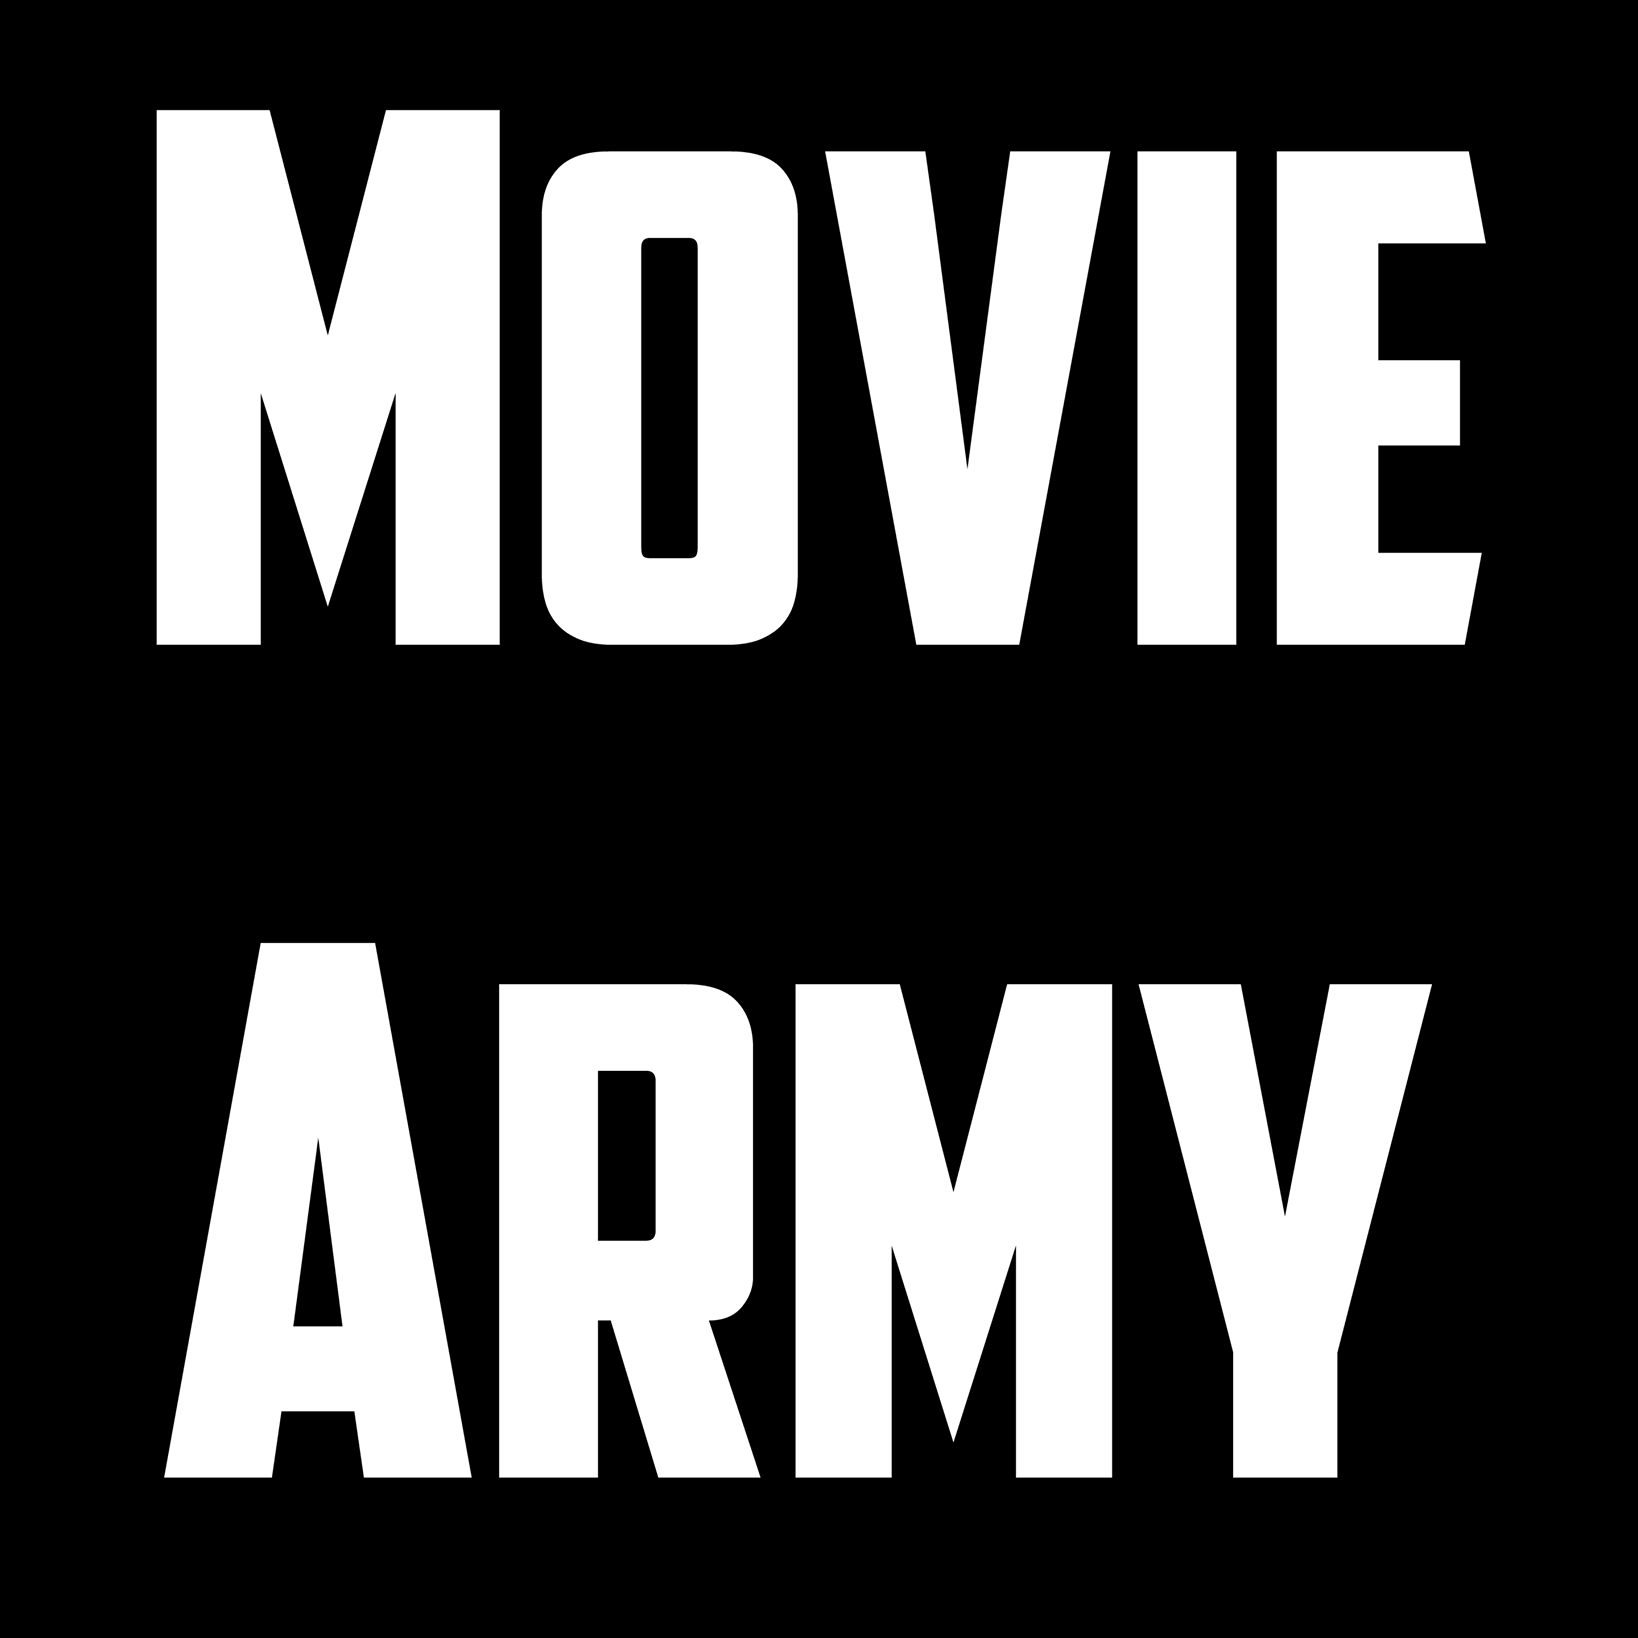 The Movie Army